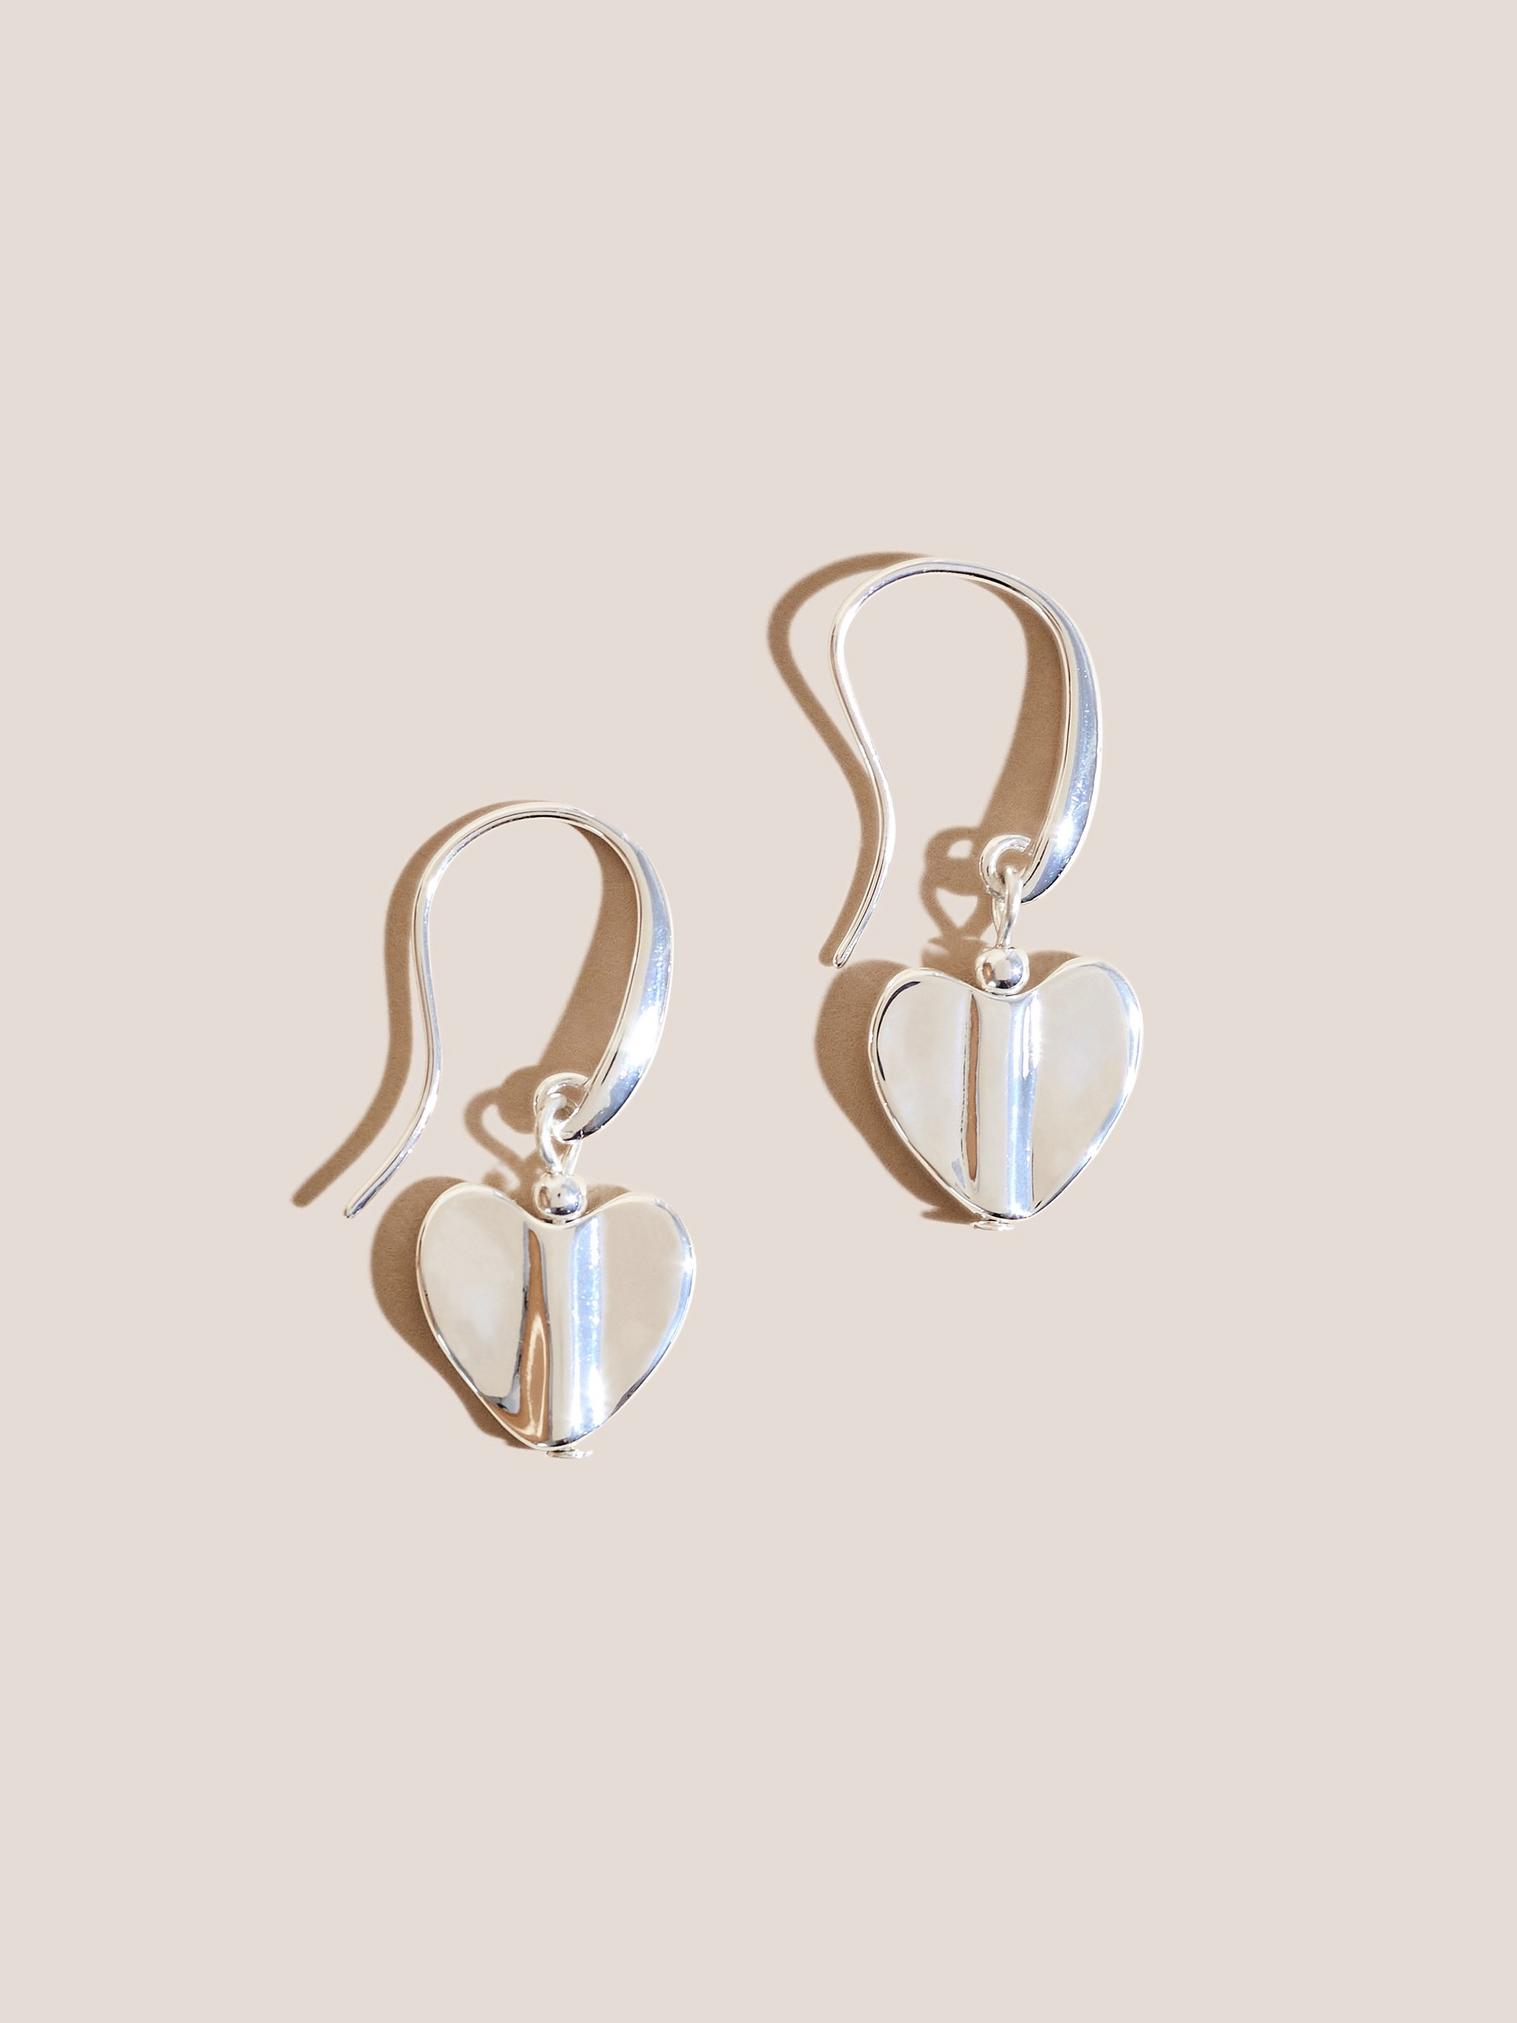 Silver Plated Heart Earrings in SLV TN MET - FLAT FRONT